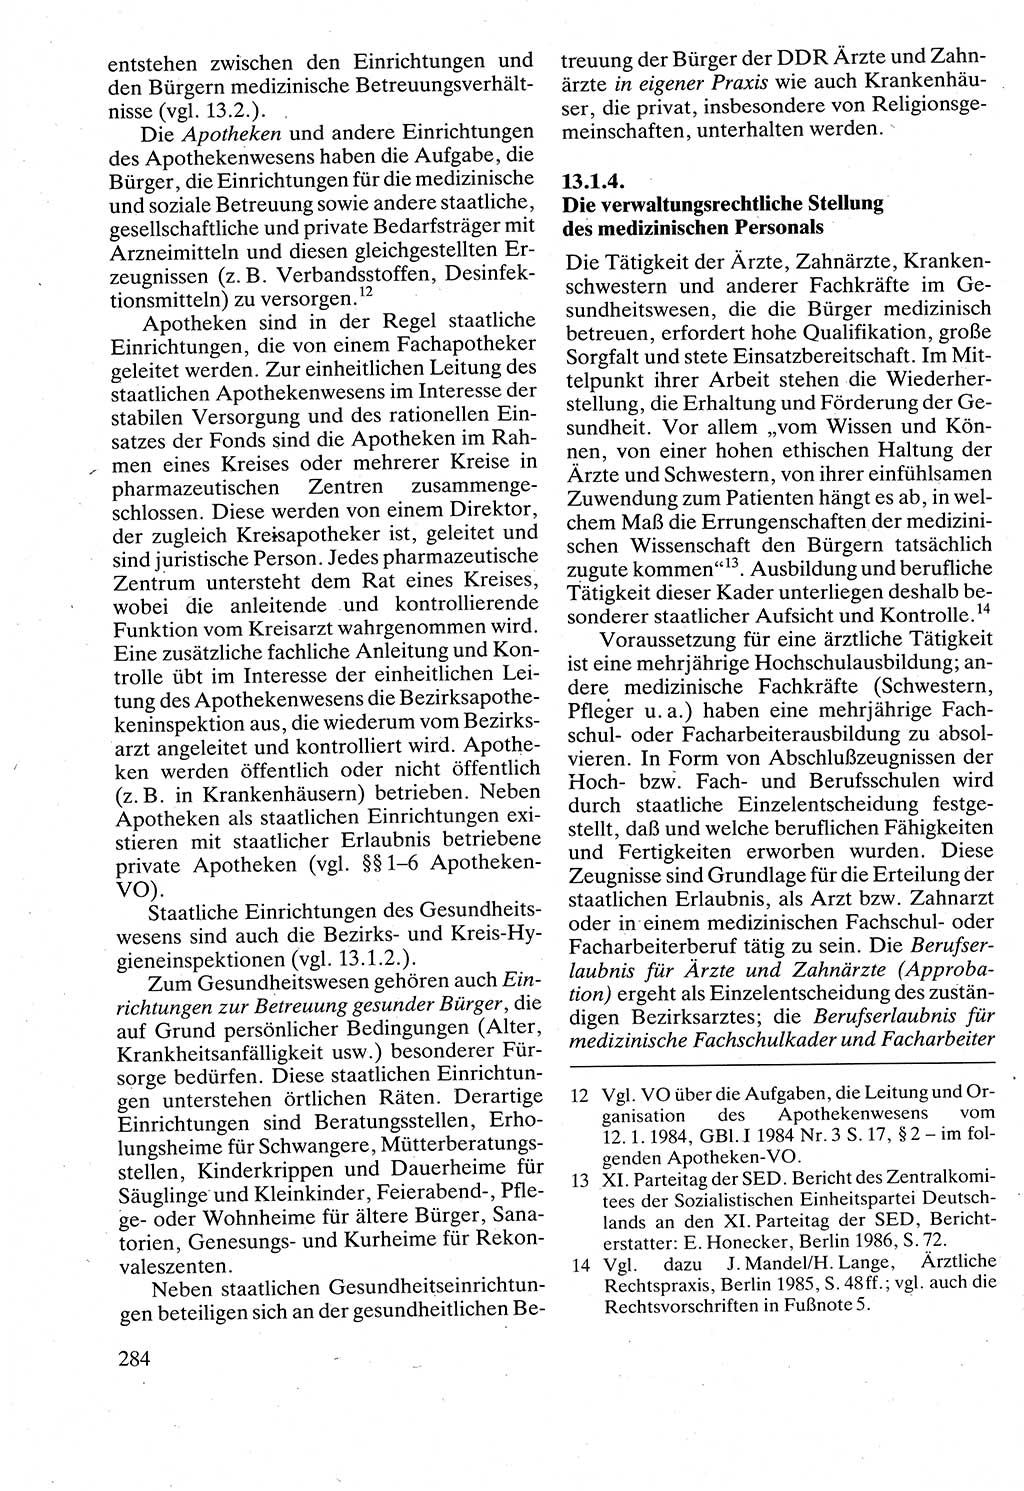 Verwaltungsrecht [Deutsche Demokratische Republik (DDR)], Lehrbuch 1988, Seite 284 (Verw.-R. DDR Lb. 1988, S. 284)